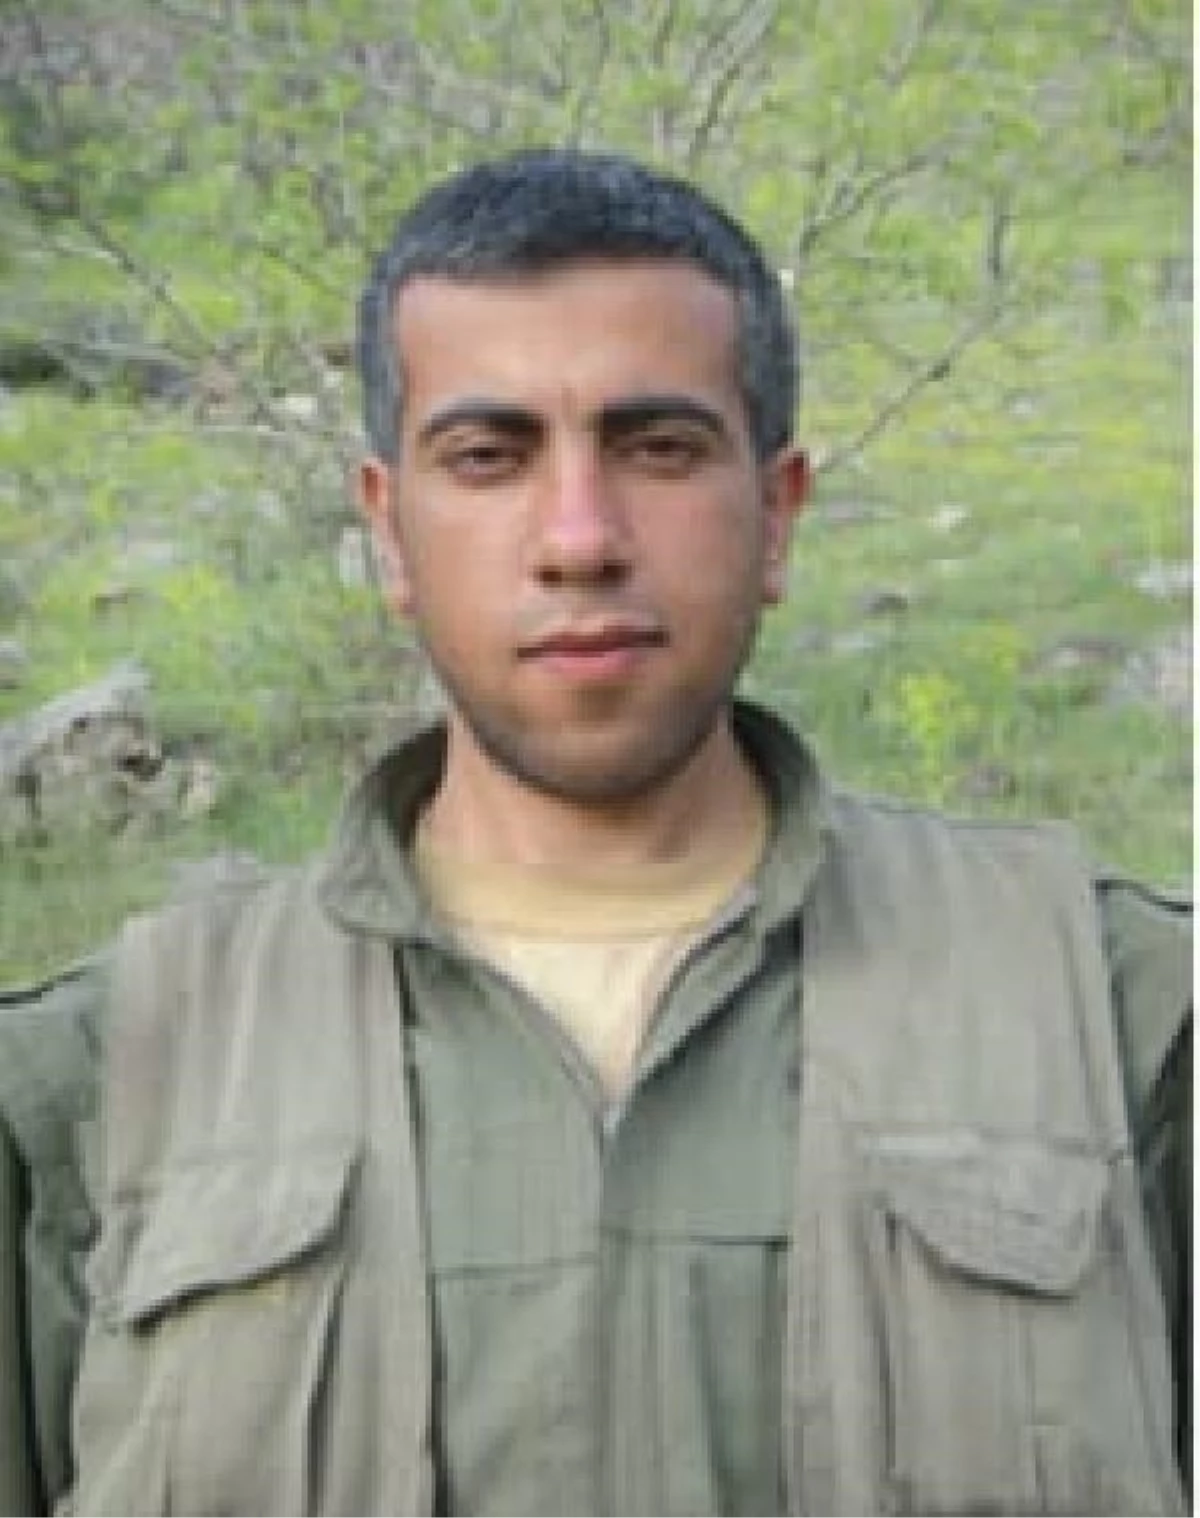 PKK/KCK\'nın basın sorumlusu \'Sidar Serhat\' etkisiz hale getirildi